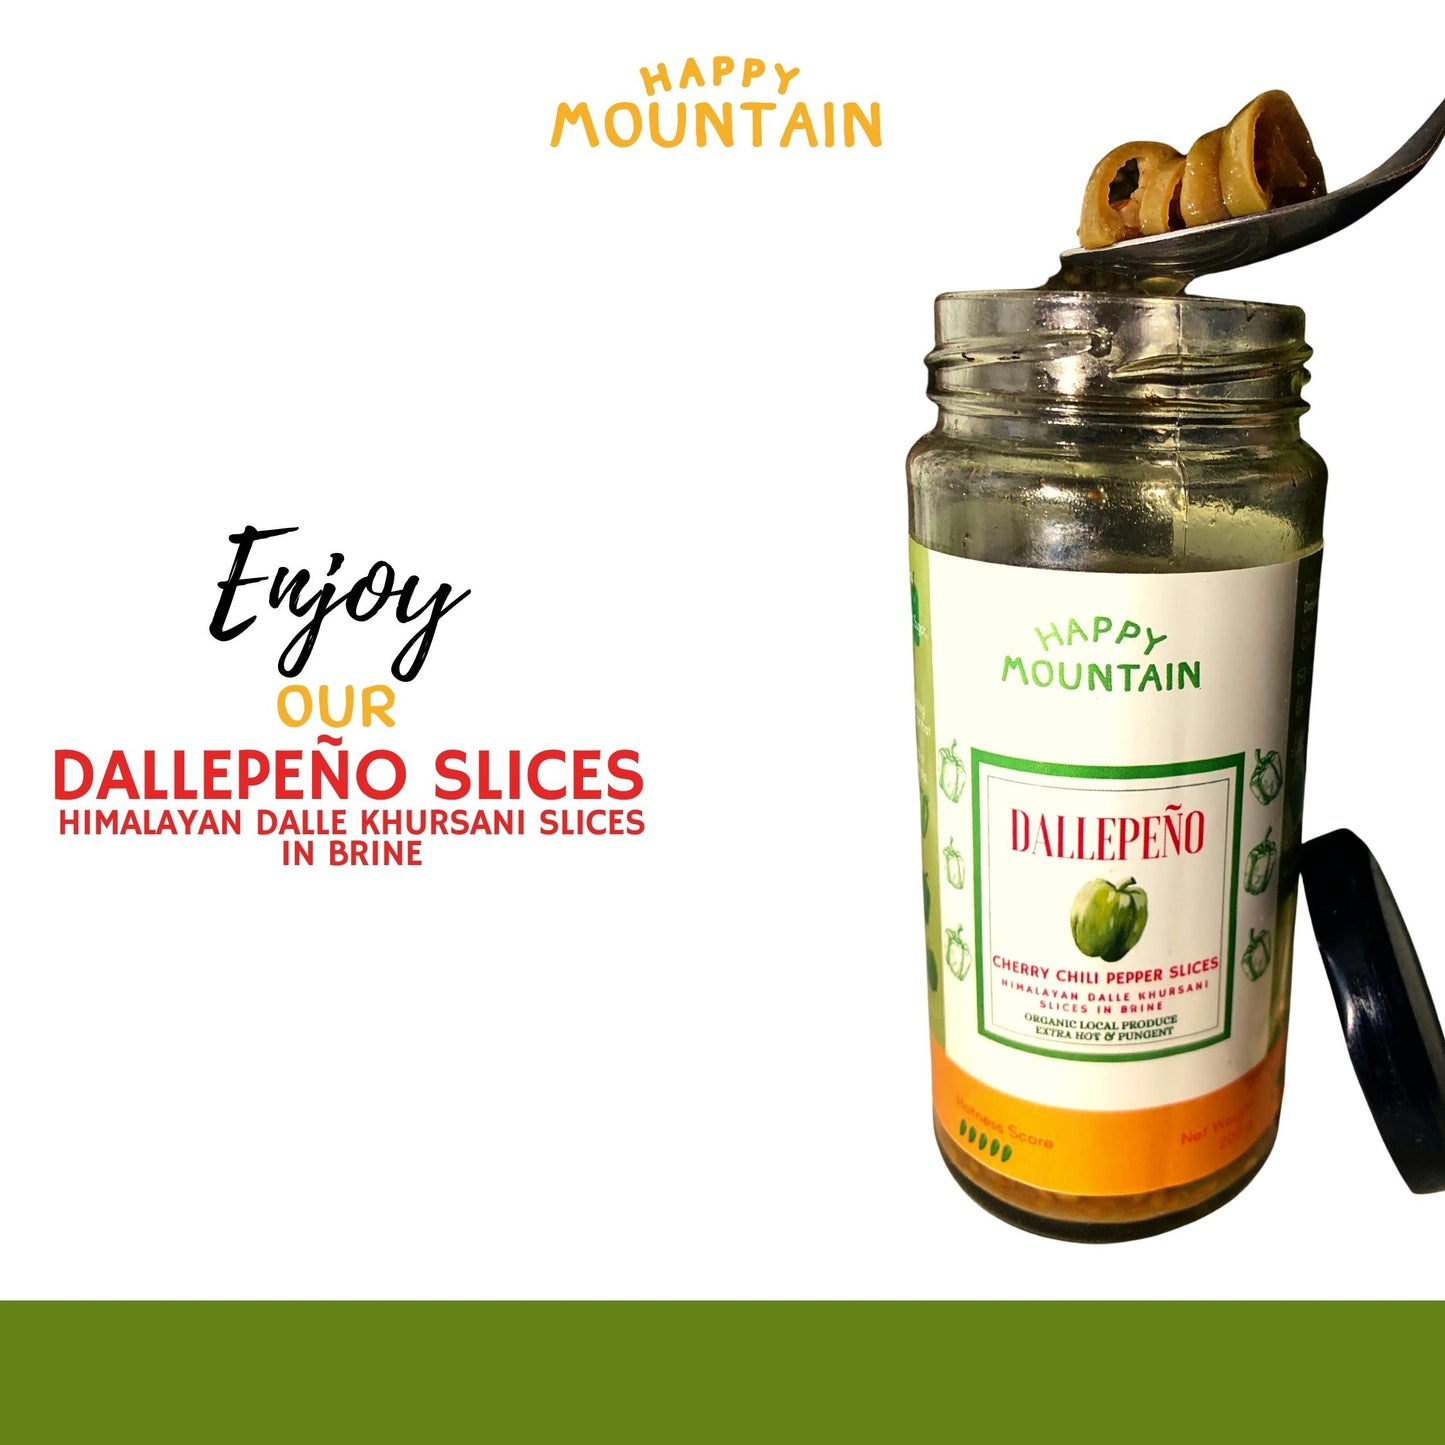 Dallepeño - Cherry Chilli Pepper (Dalle) Slices in Brine - Happy Mountain